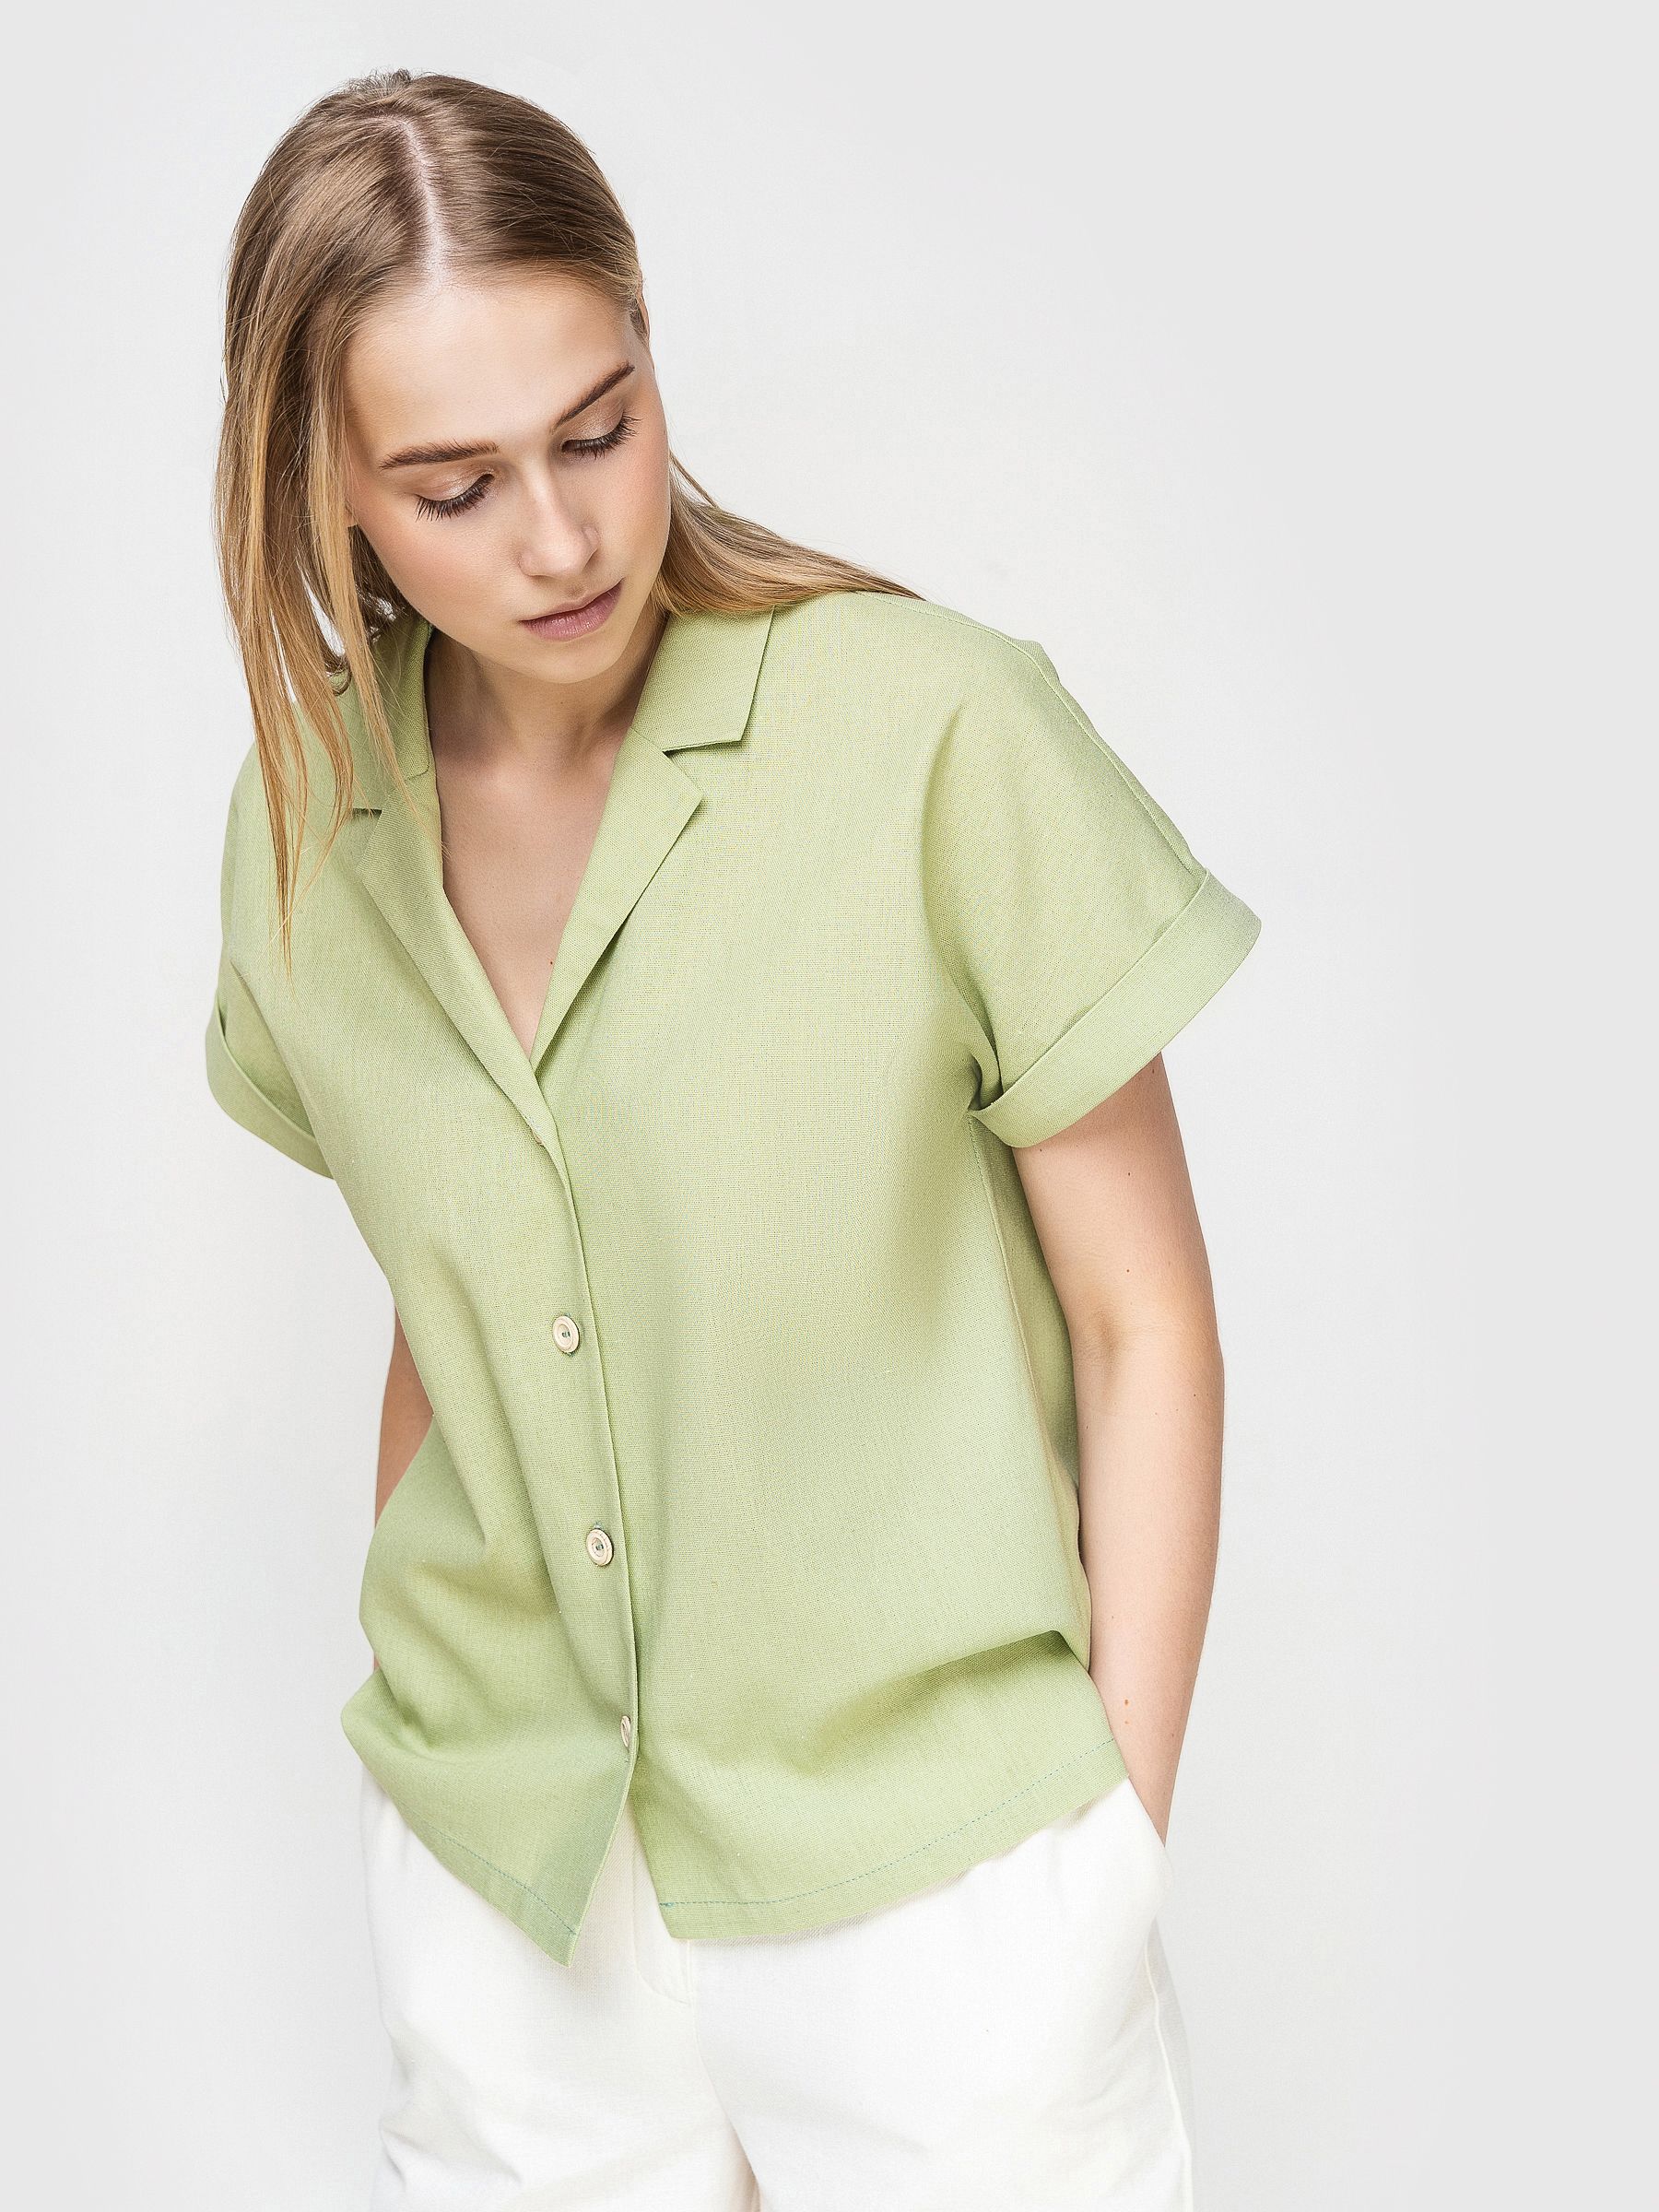 Рубашка женская AM One 6019/3   зеленая 50 RU